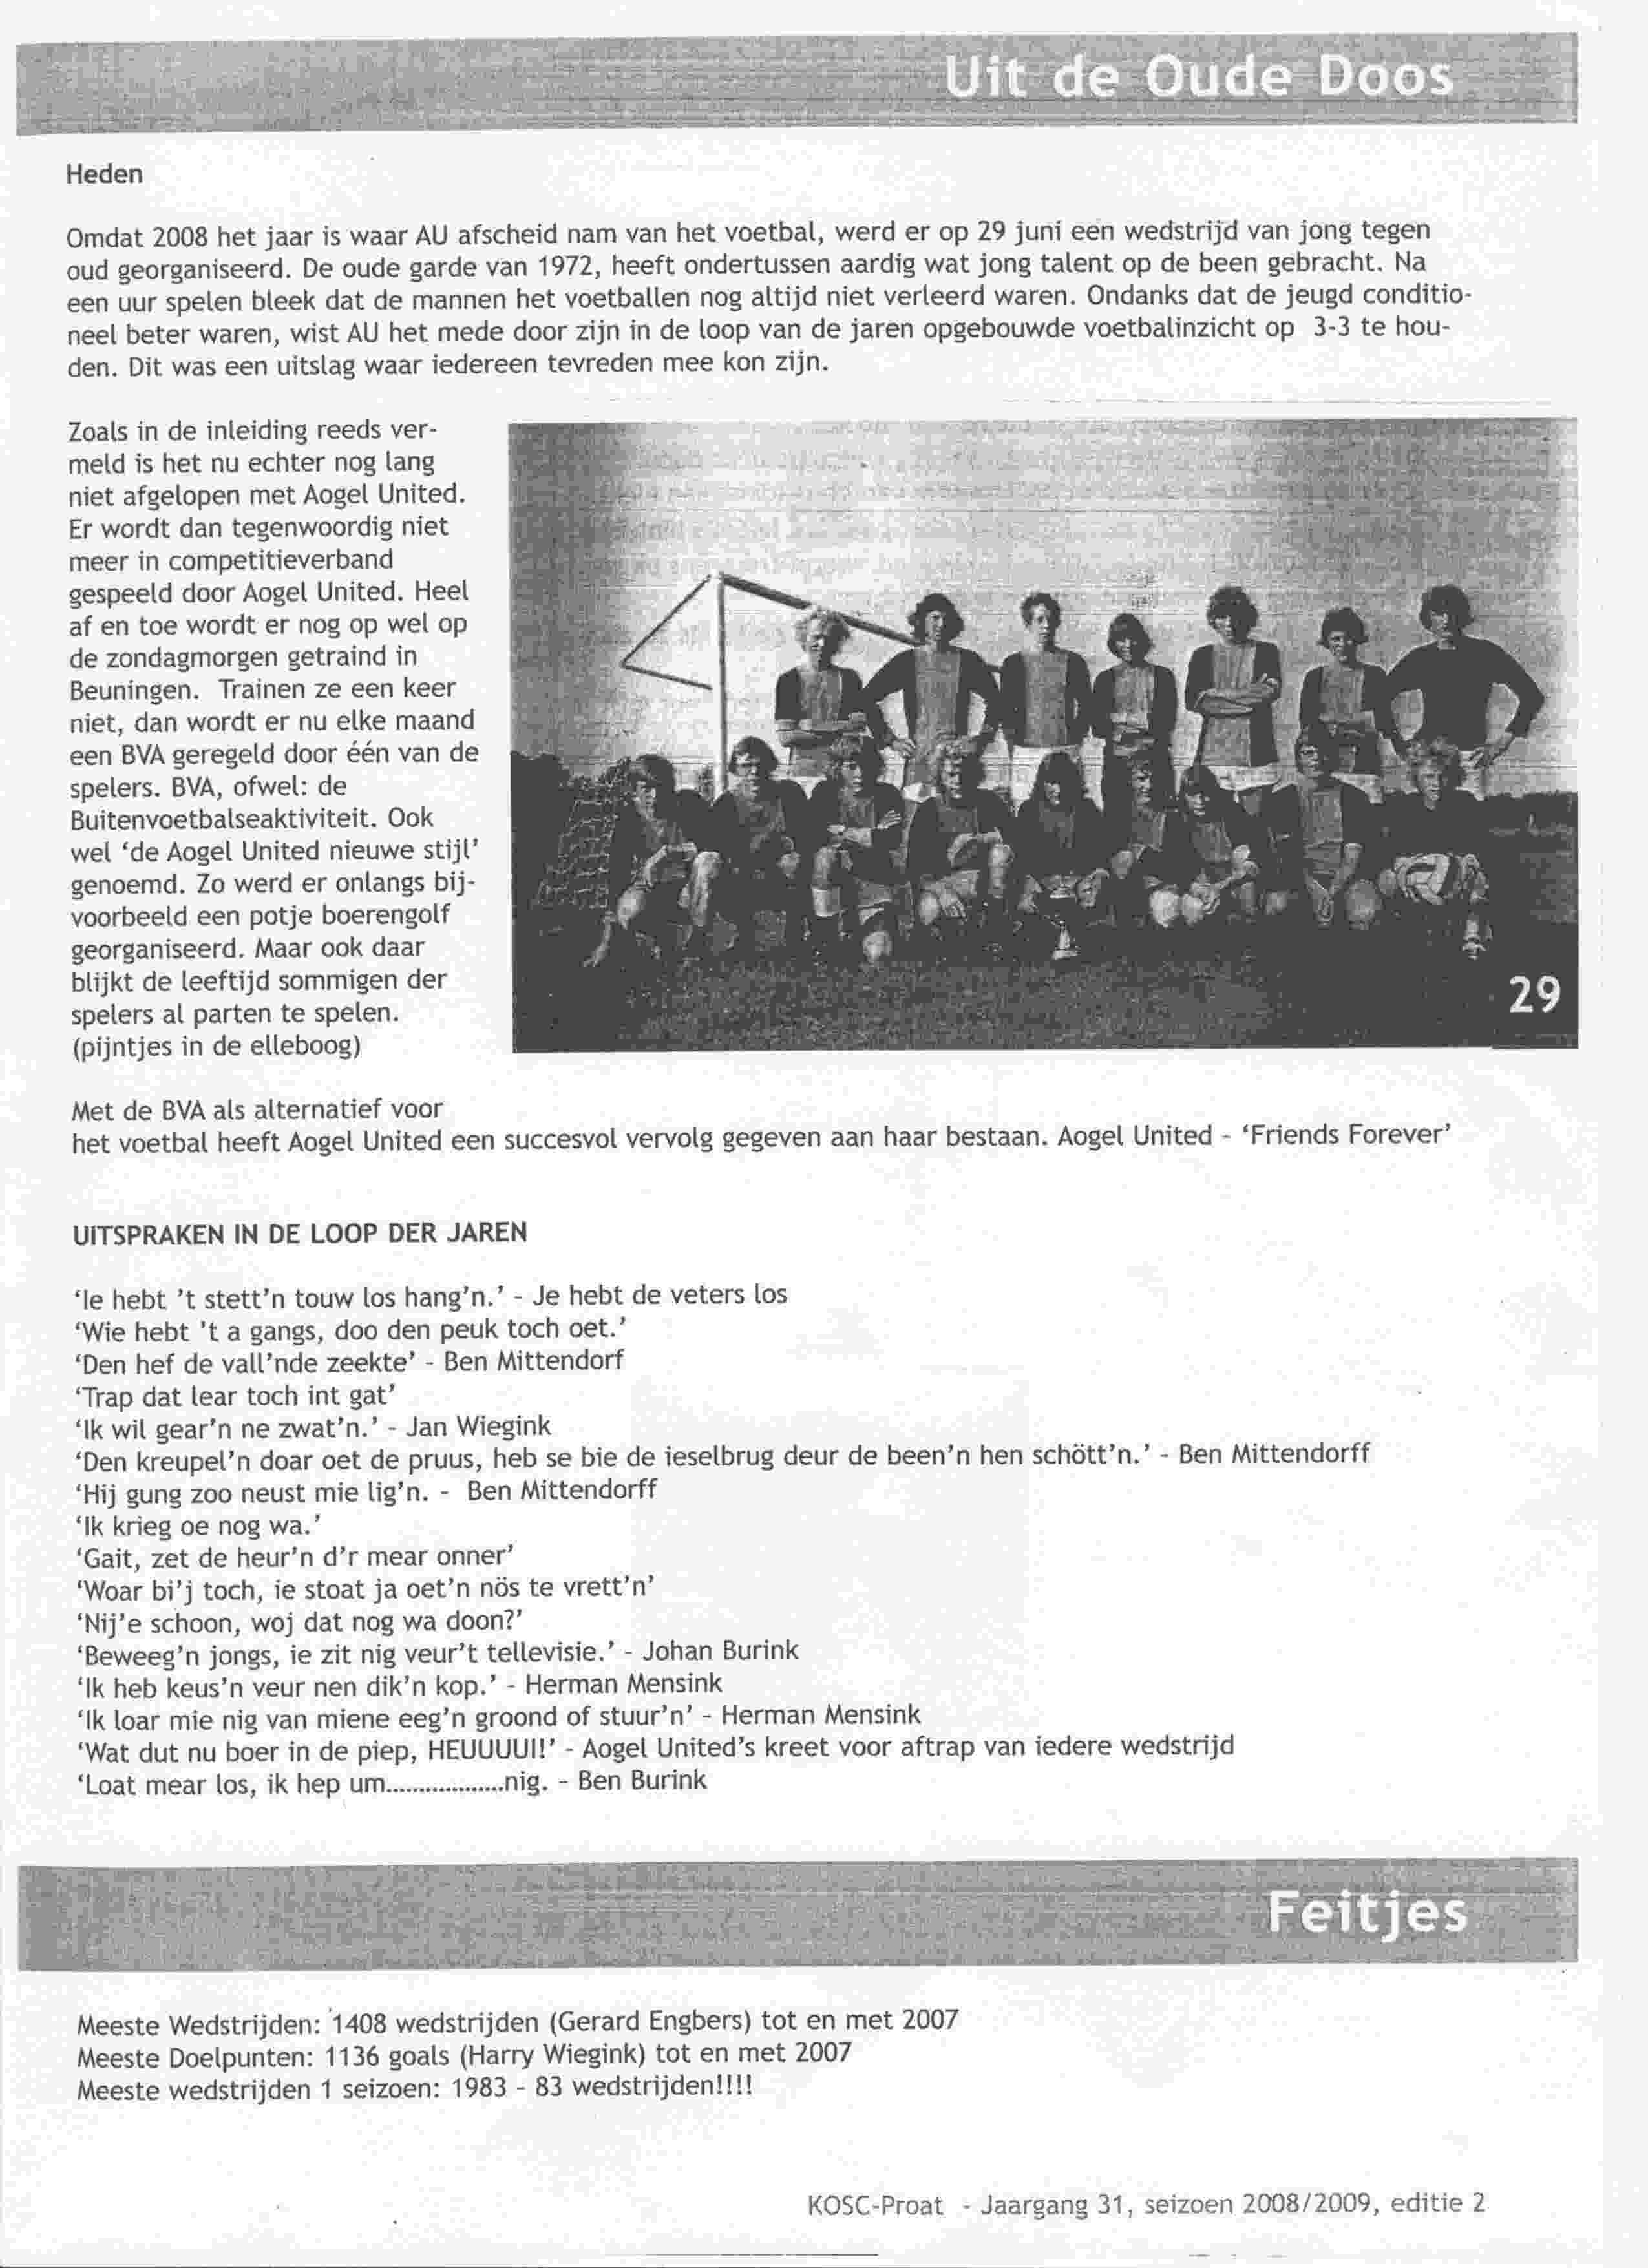 Artikel over Aogel United in KOSC-proat op 2009-01-01